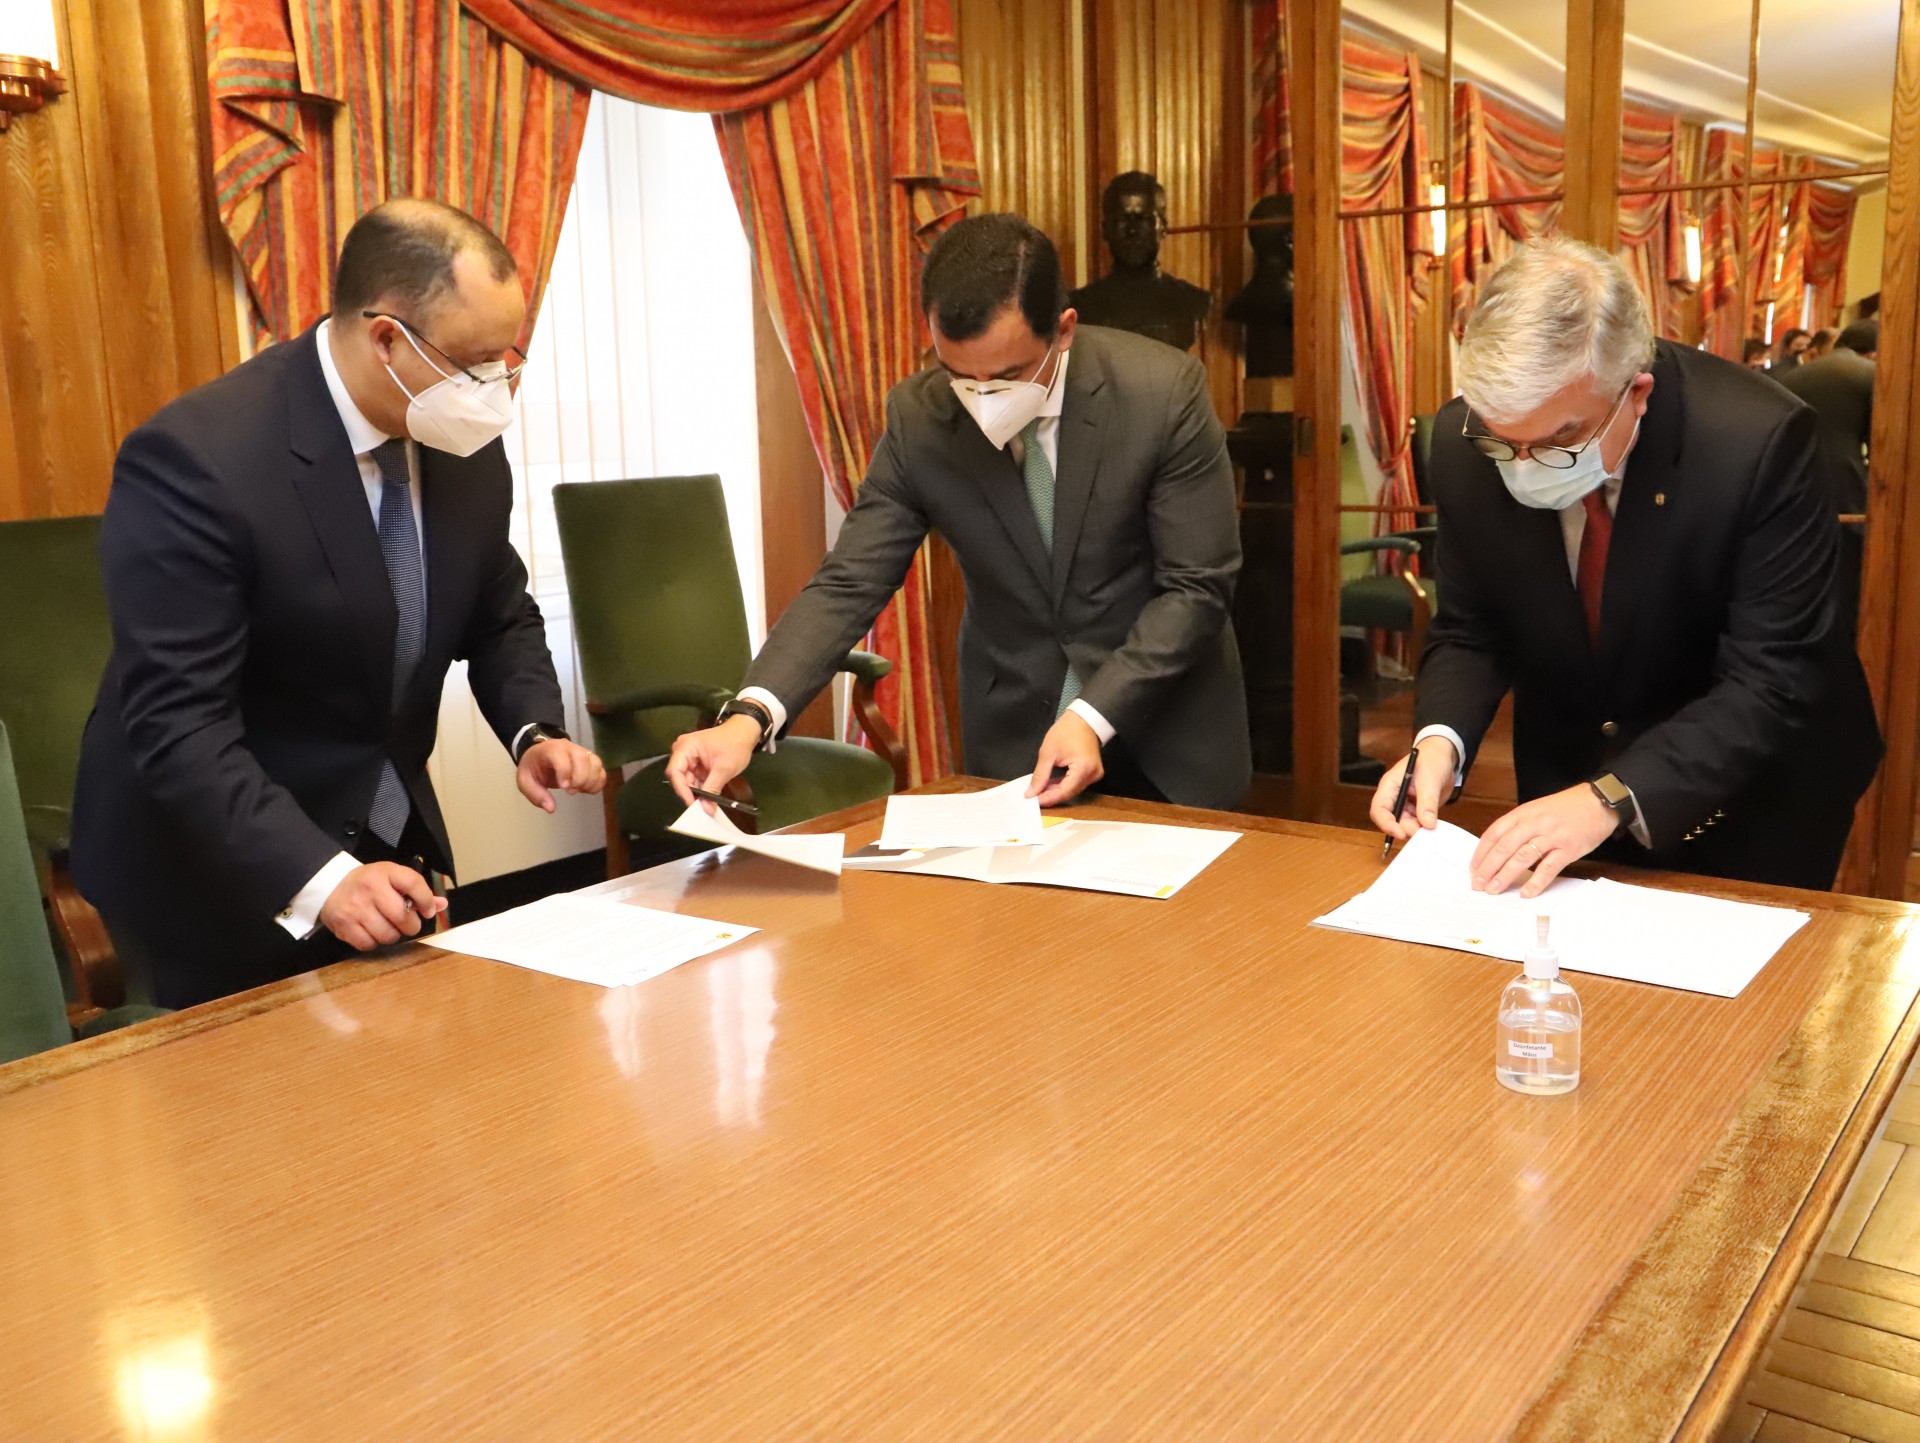 3 homens a assinar documentos